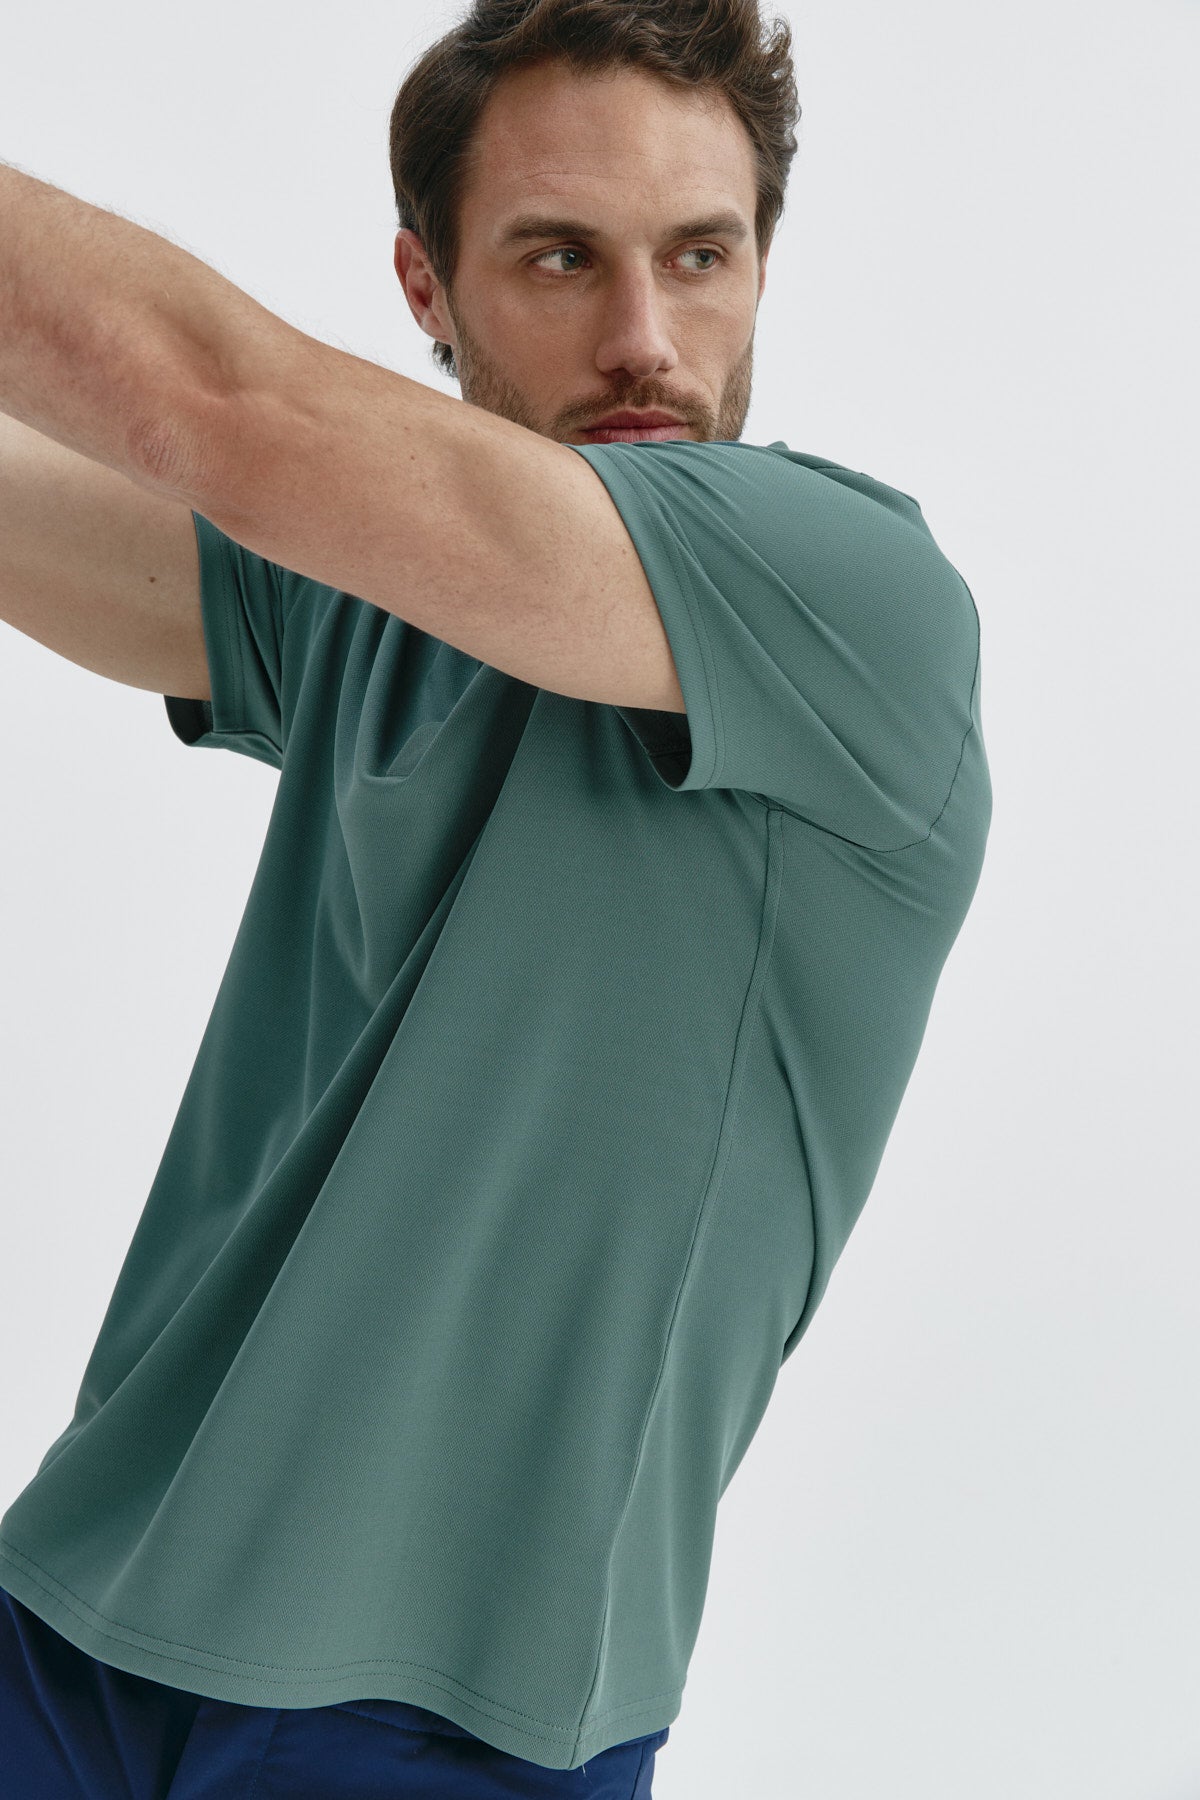 Polo manga corta para hombre en verde cecina de Sepiia, comodidad y estilo para cualquier ocasión. Foto flexibilidad